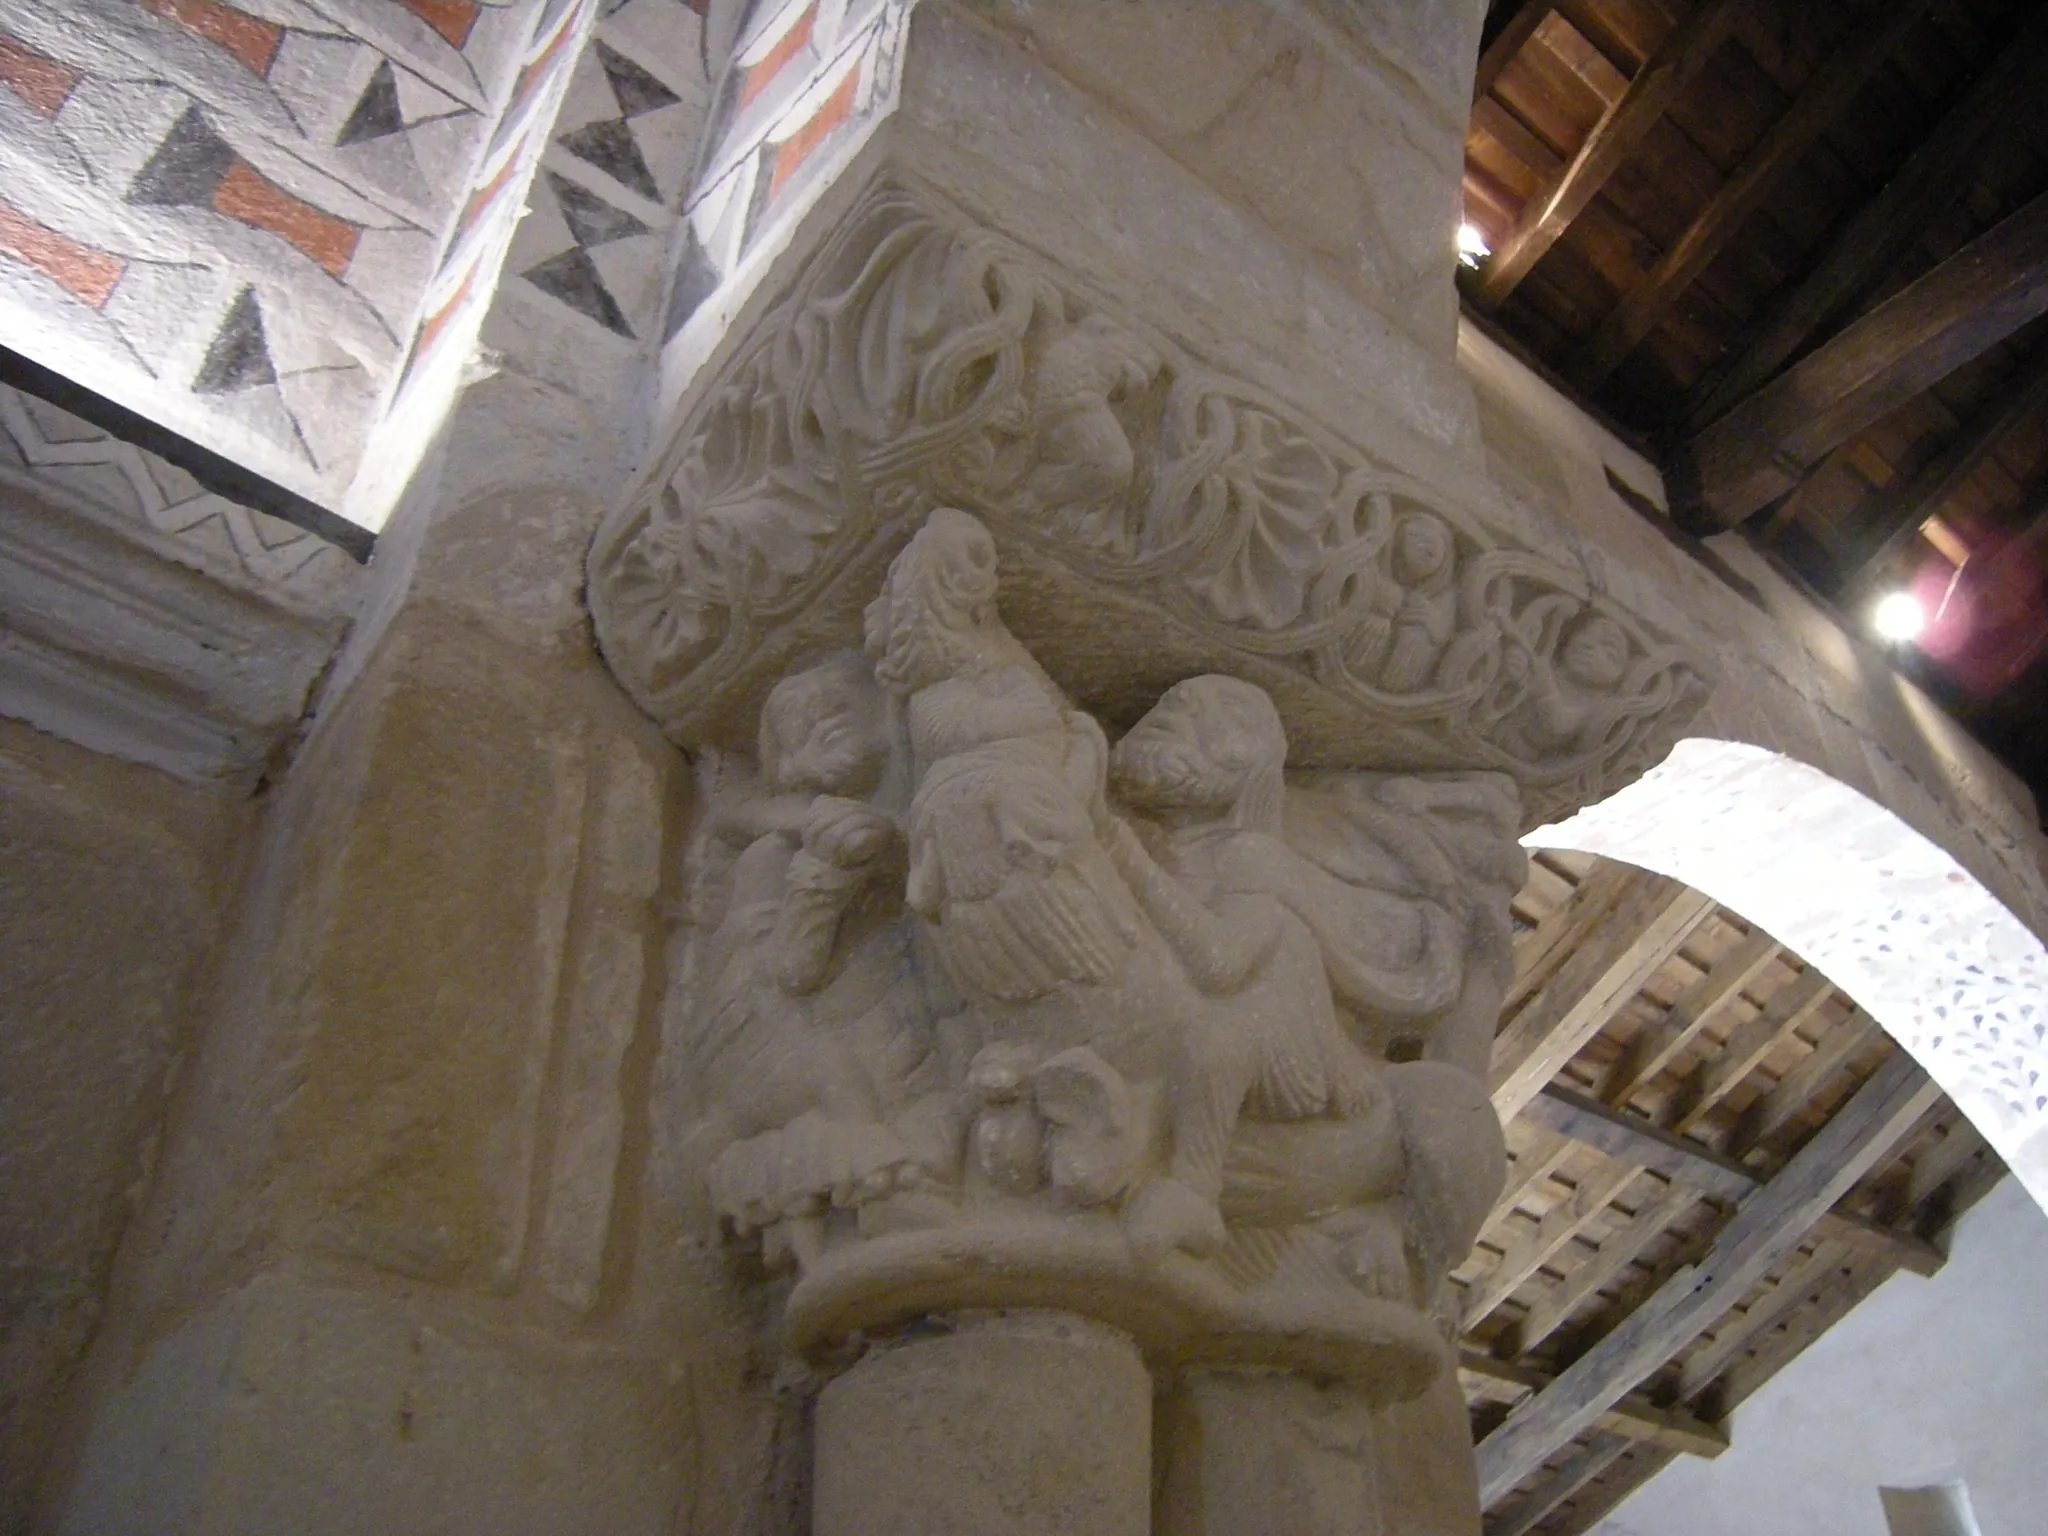 Photo showing: Capitel del arco triunfal que nos muestra un personaje interpretado como Sansón, que cabalga y desquijara a un león.

Esta foto participó en el juego En otro lugar de Flickr.